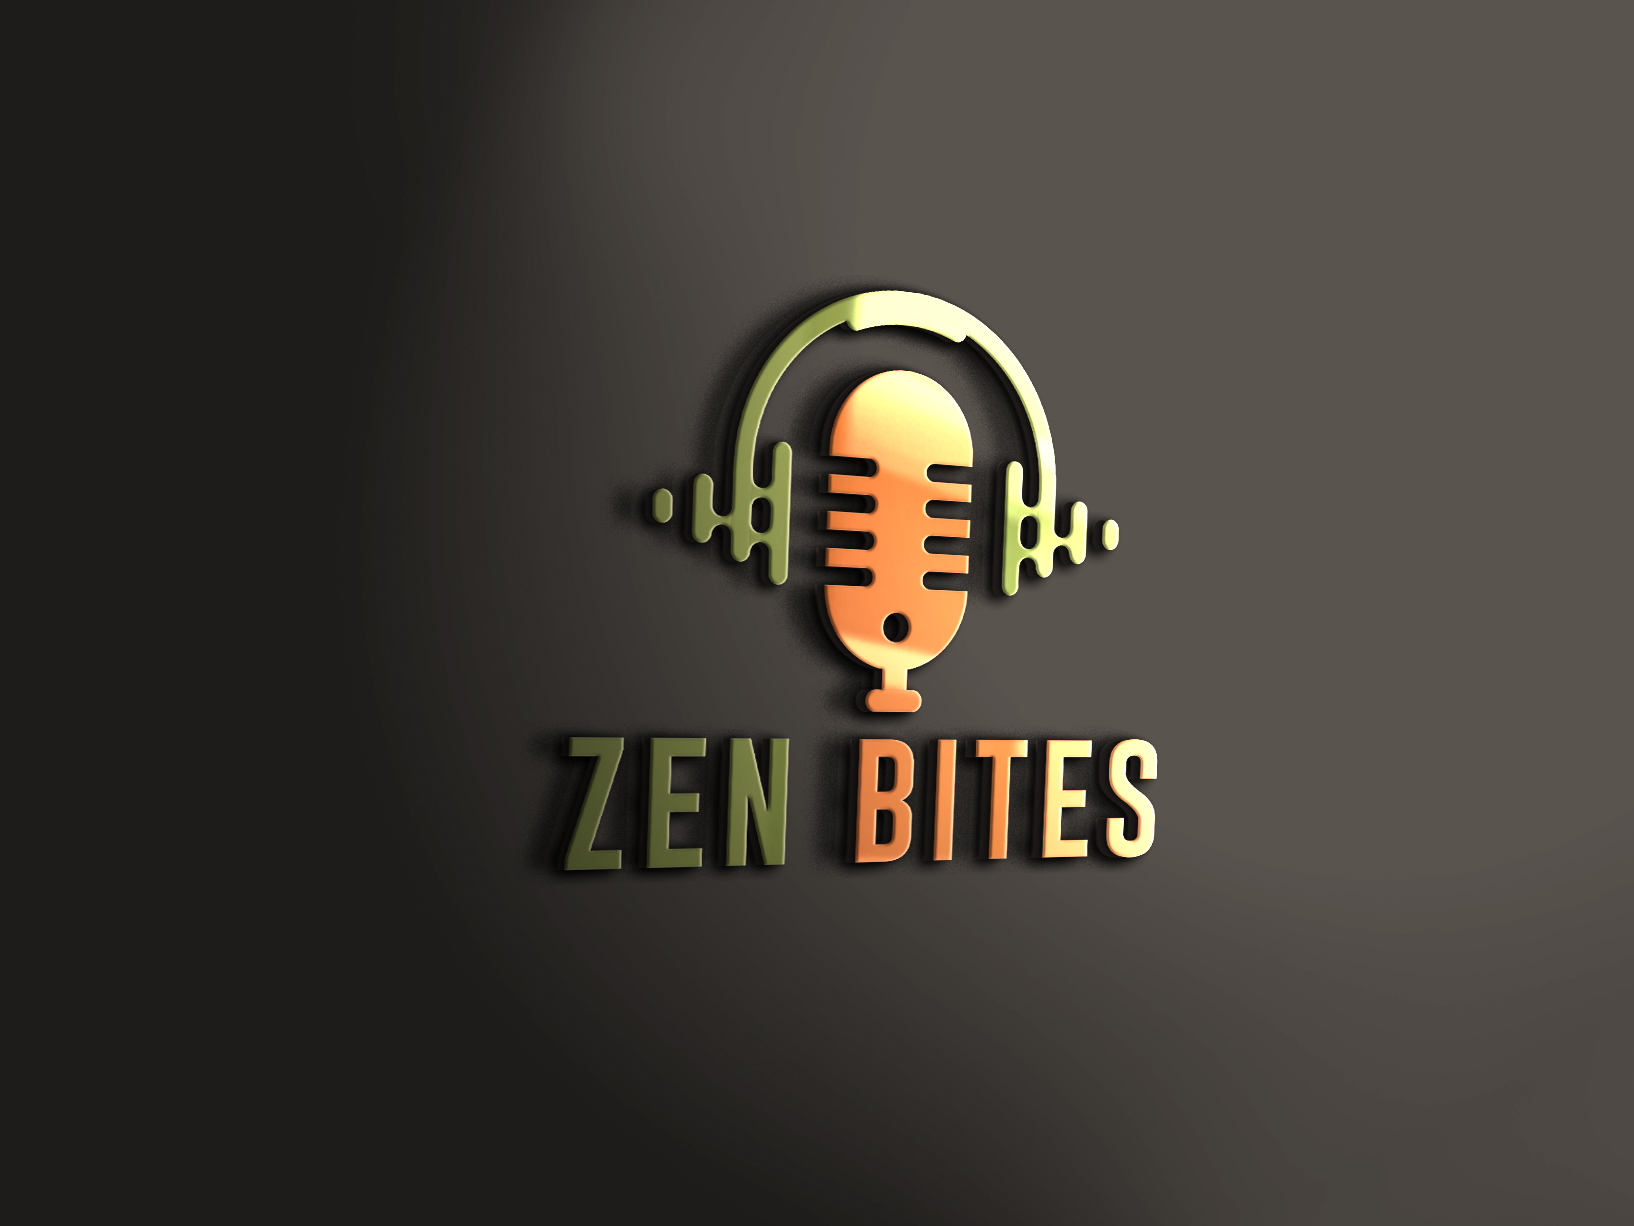 Zen Bites